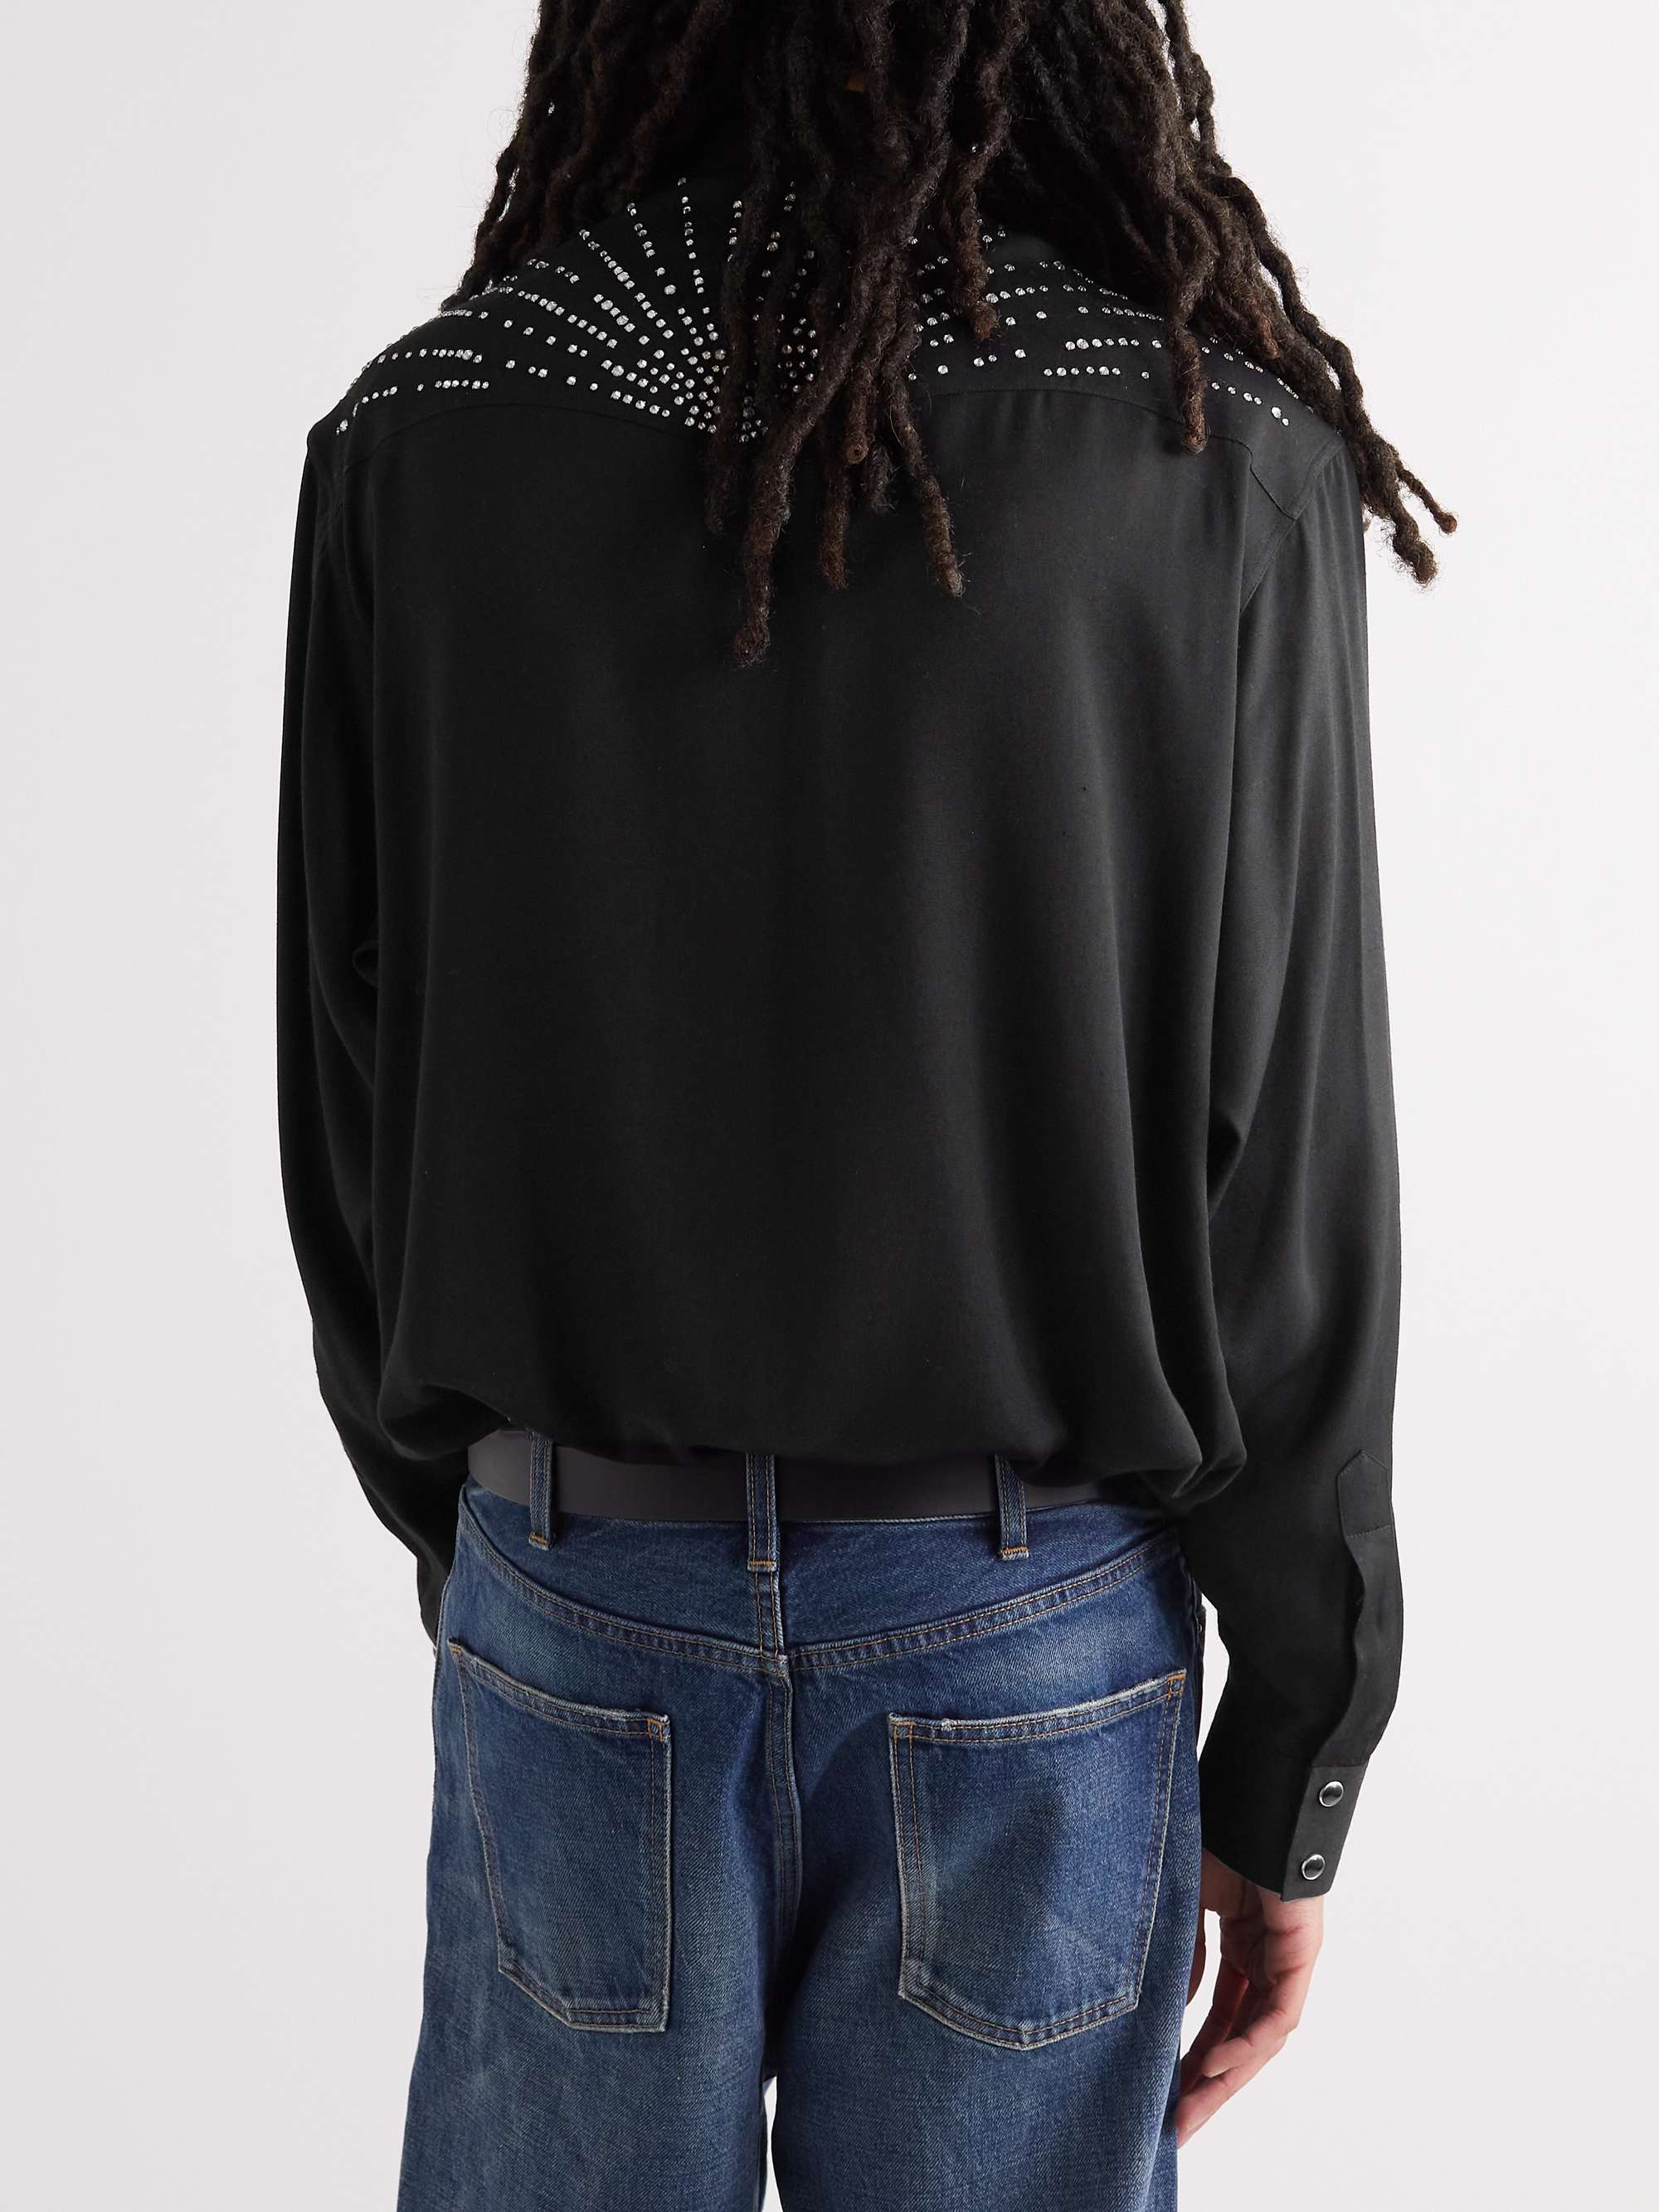 CELINE HOMME Crystal-Embellished Twill Shirt